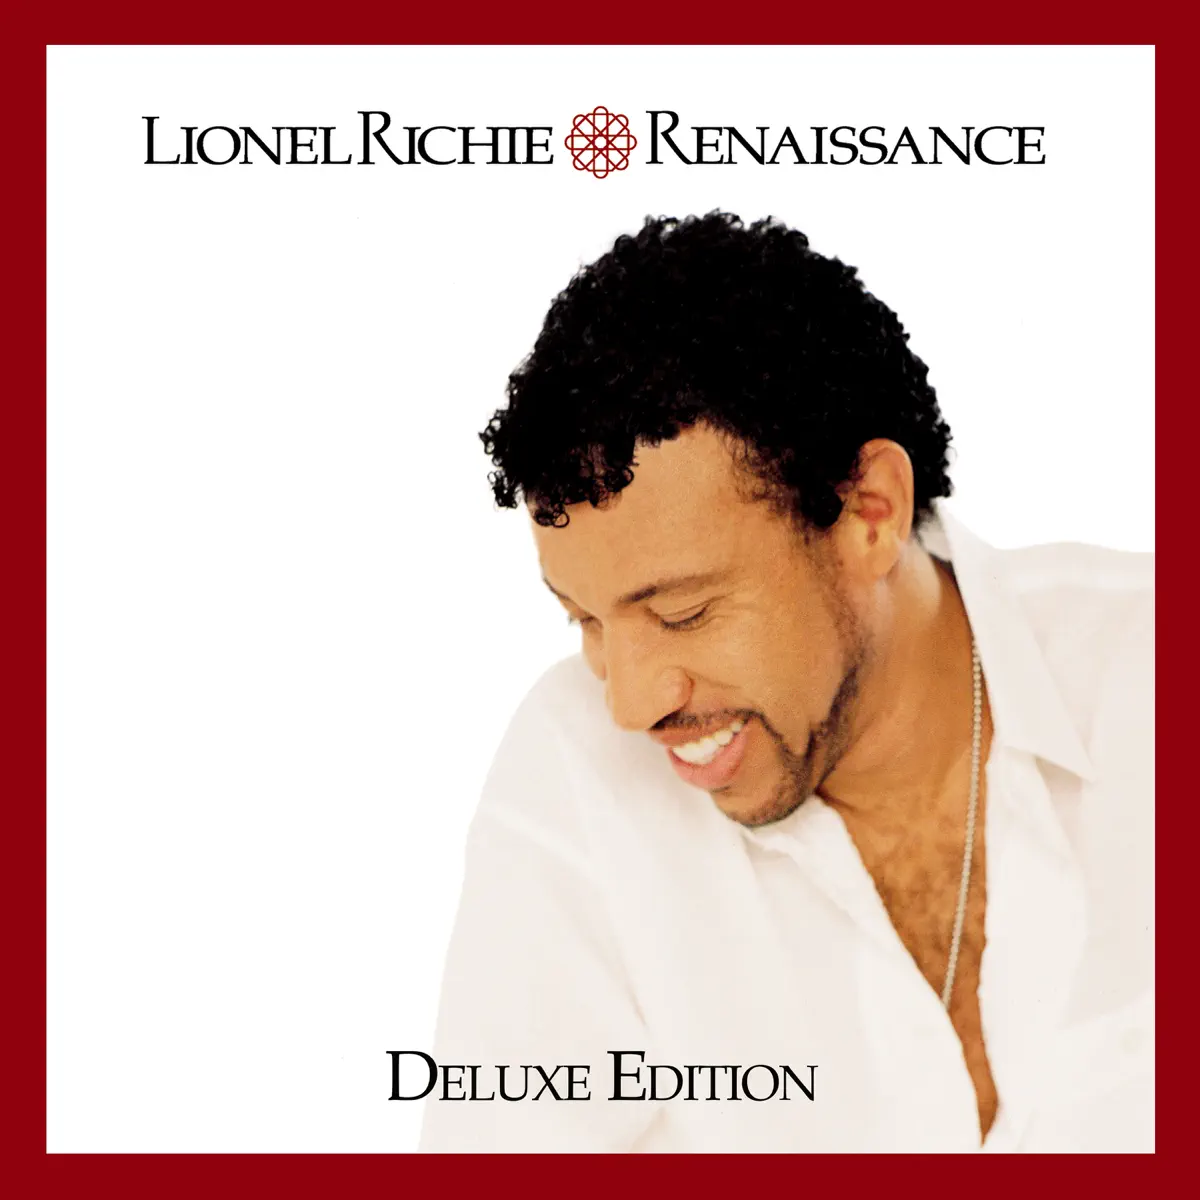 Lionel Richie - Renaissance (Deluxe Edition) (2000) [iTunes Plus AAC M4A]-新房子